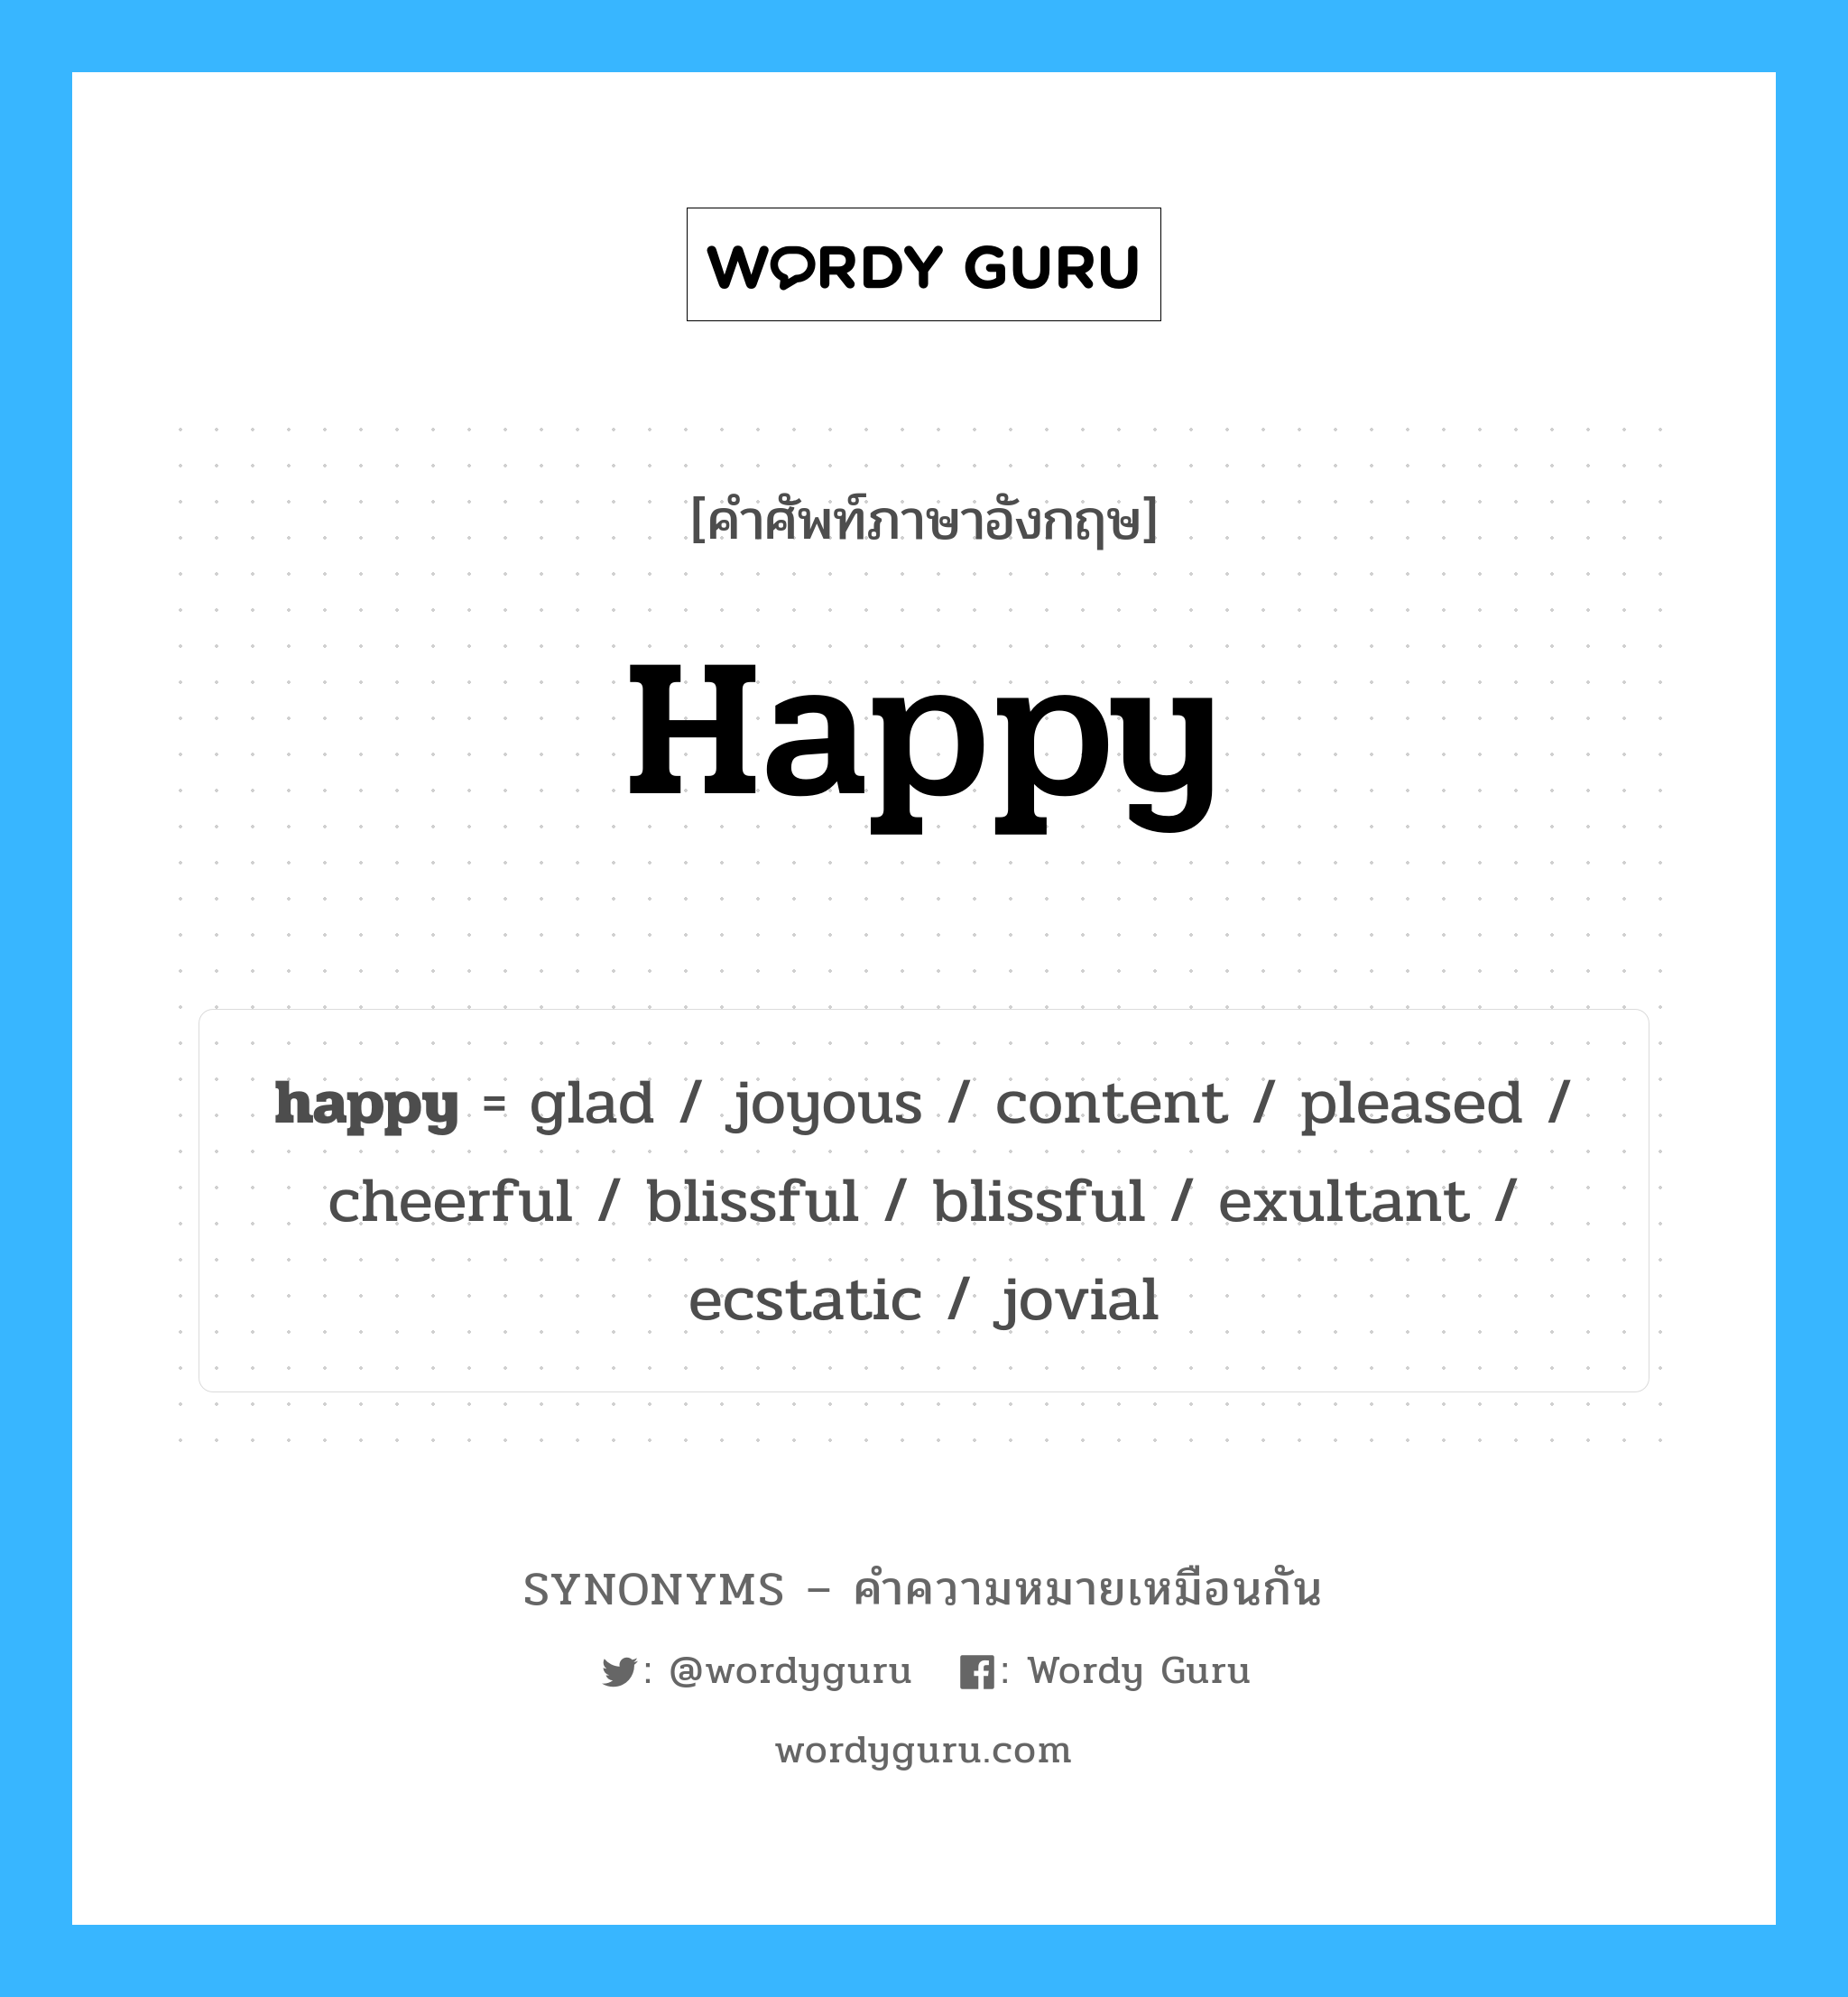 happy เป็นหนึ่งใน blissful และมีคำอื่น ๆ อีกดังนี้, คำศัพท์ภาษาอังกฤษ happy ความหมายคล้ายกันกับ blissful แปลว่า ความสุข หมวด blissful